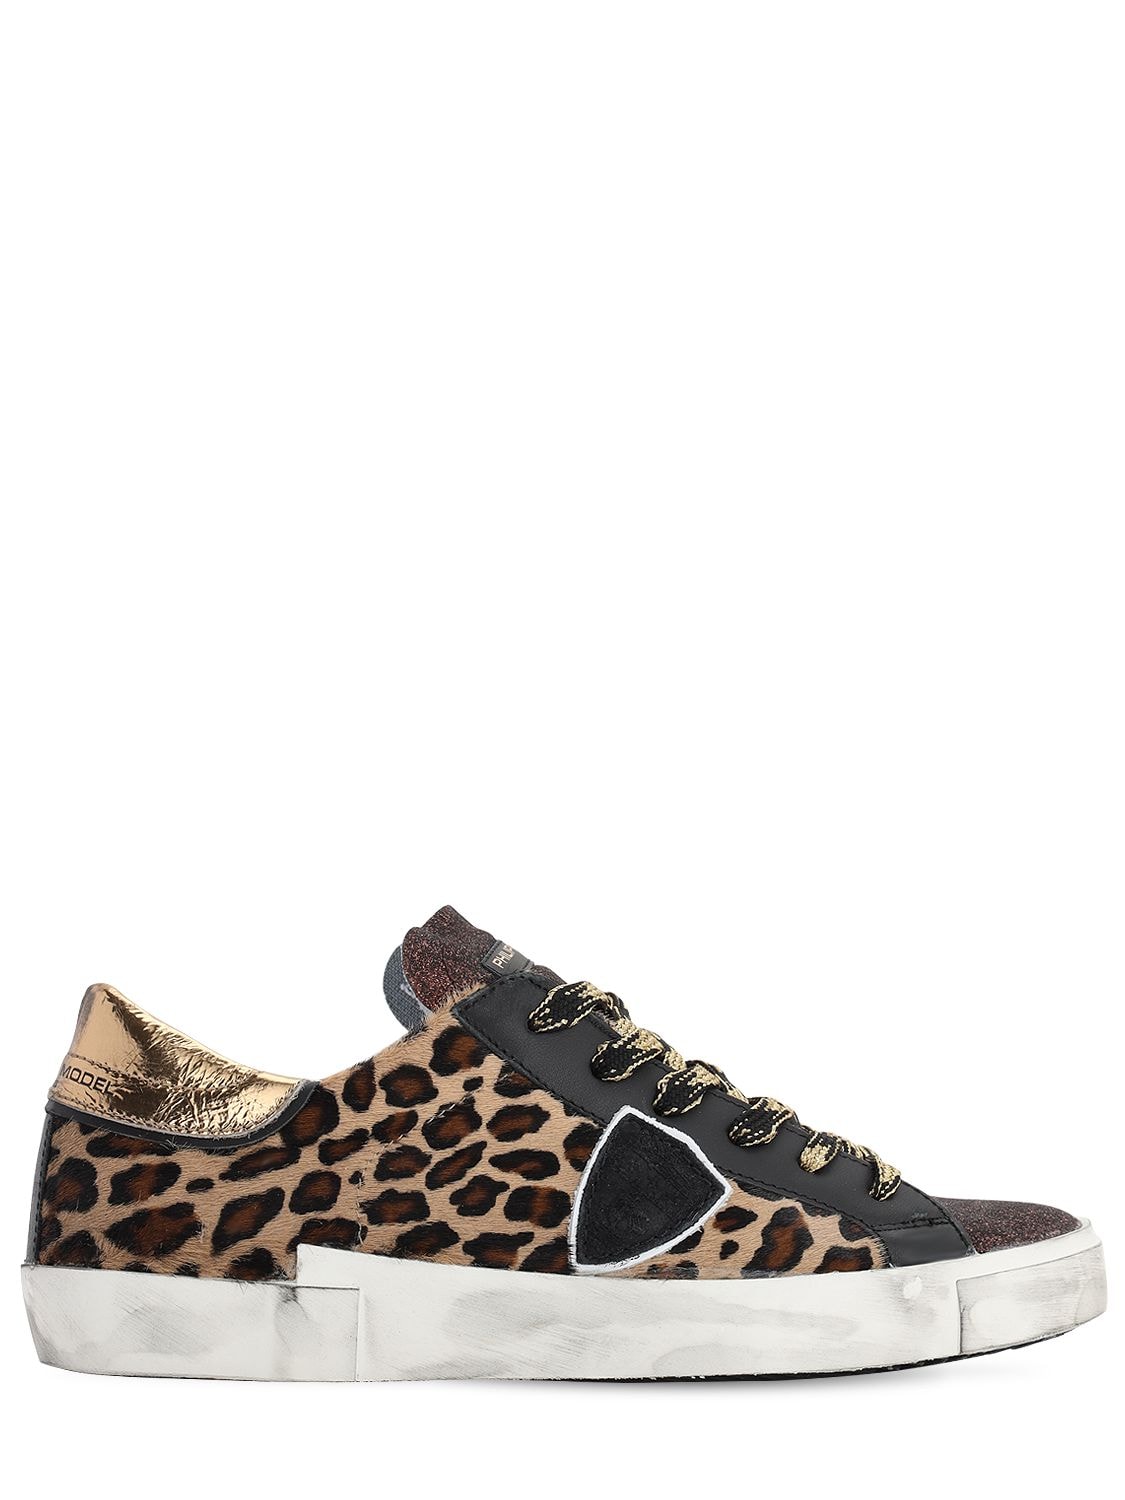 philippe model leopard sneakers